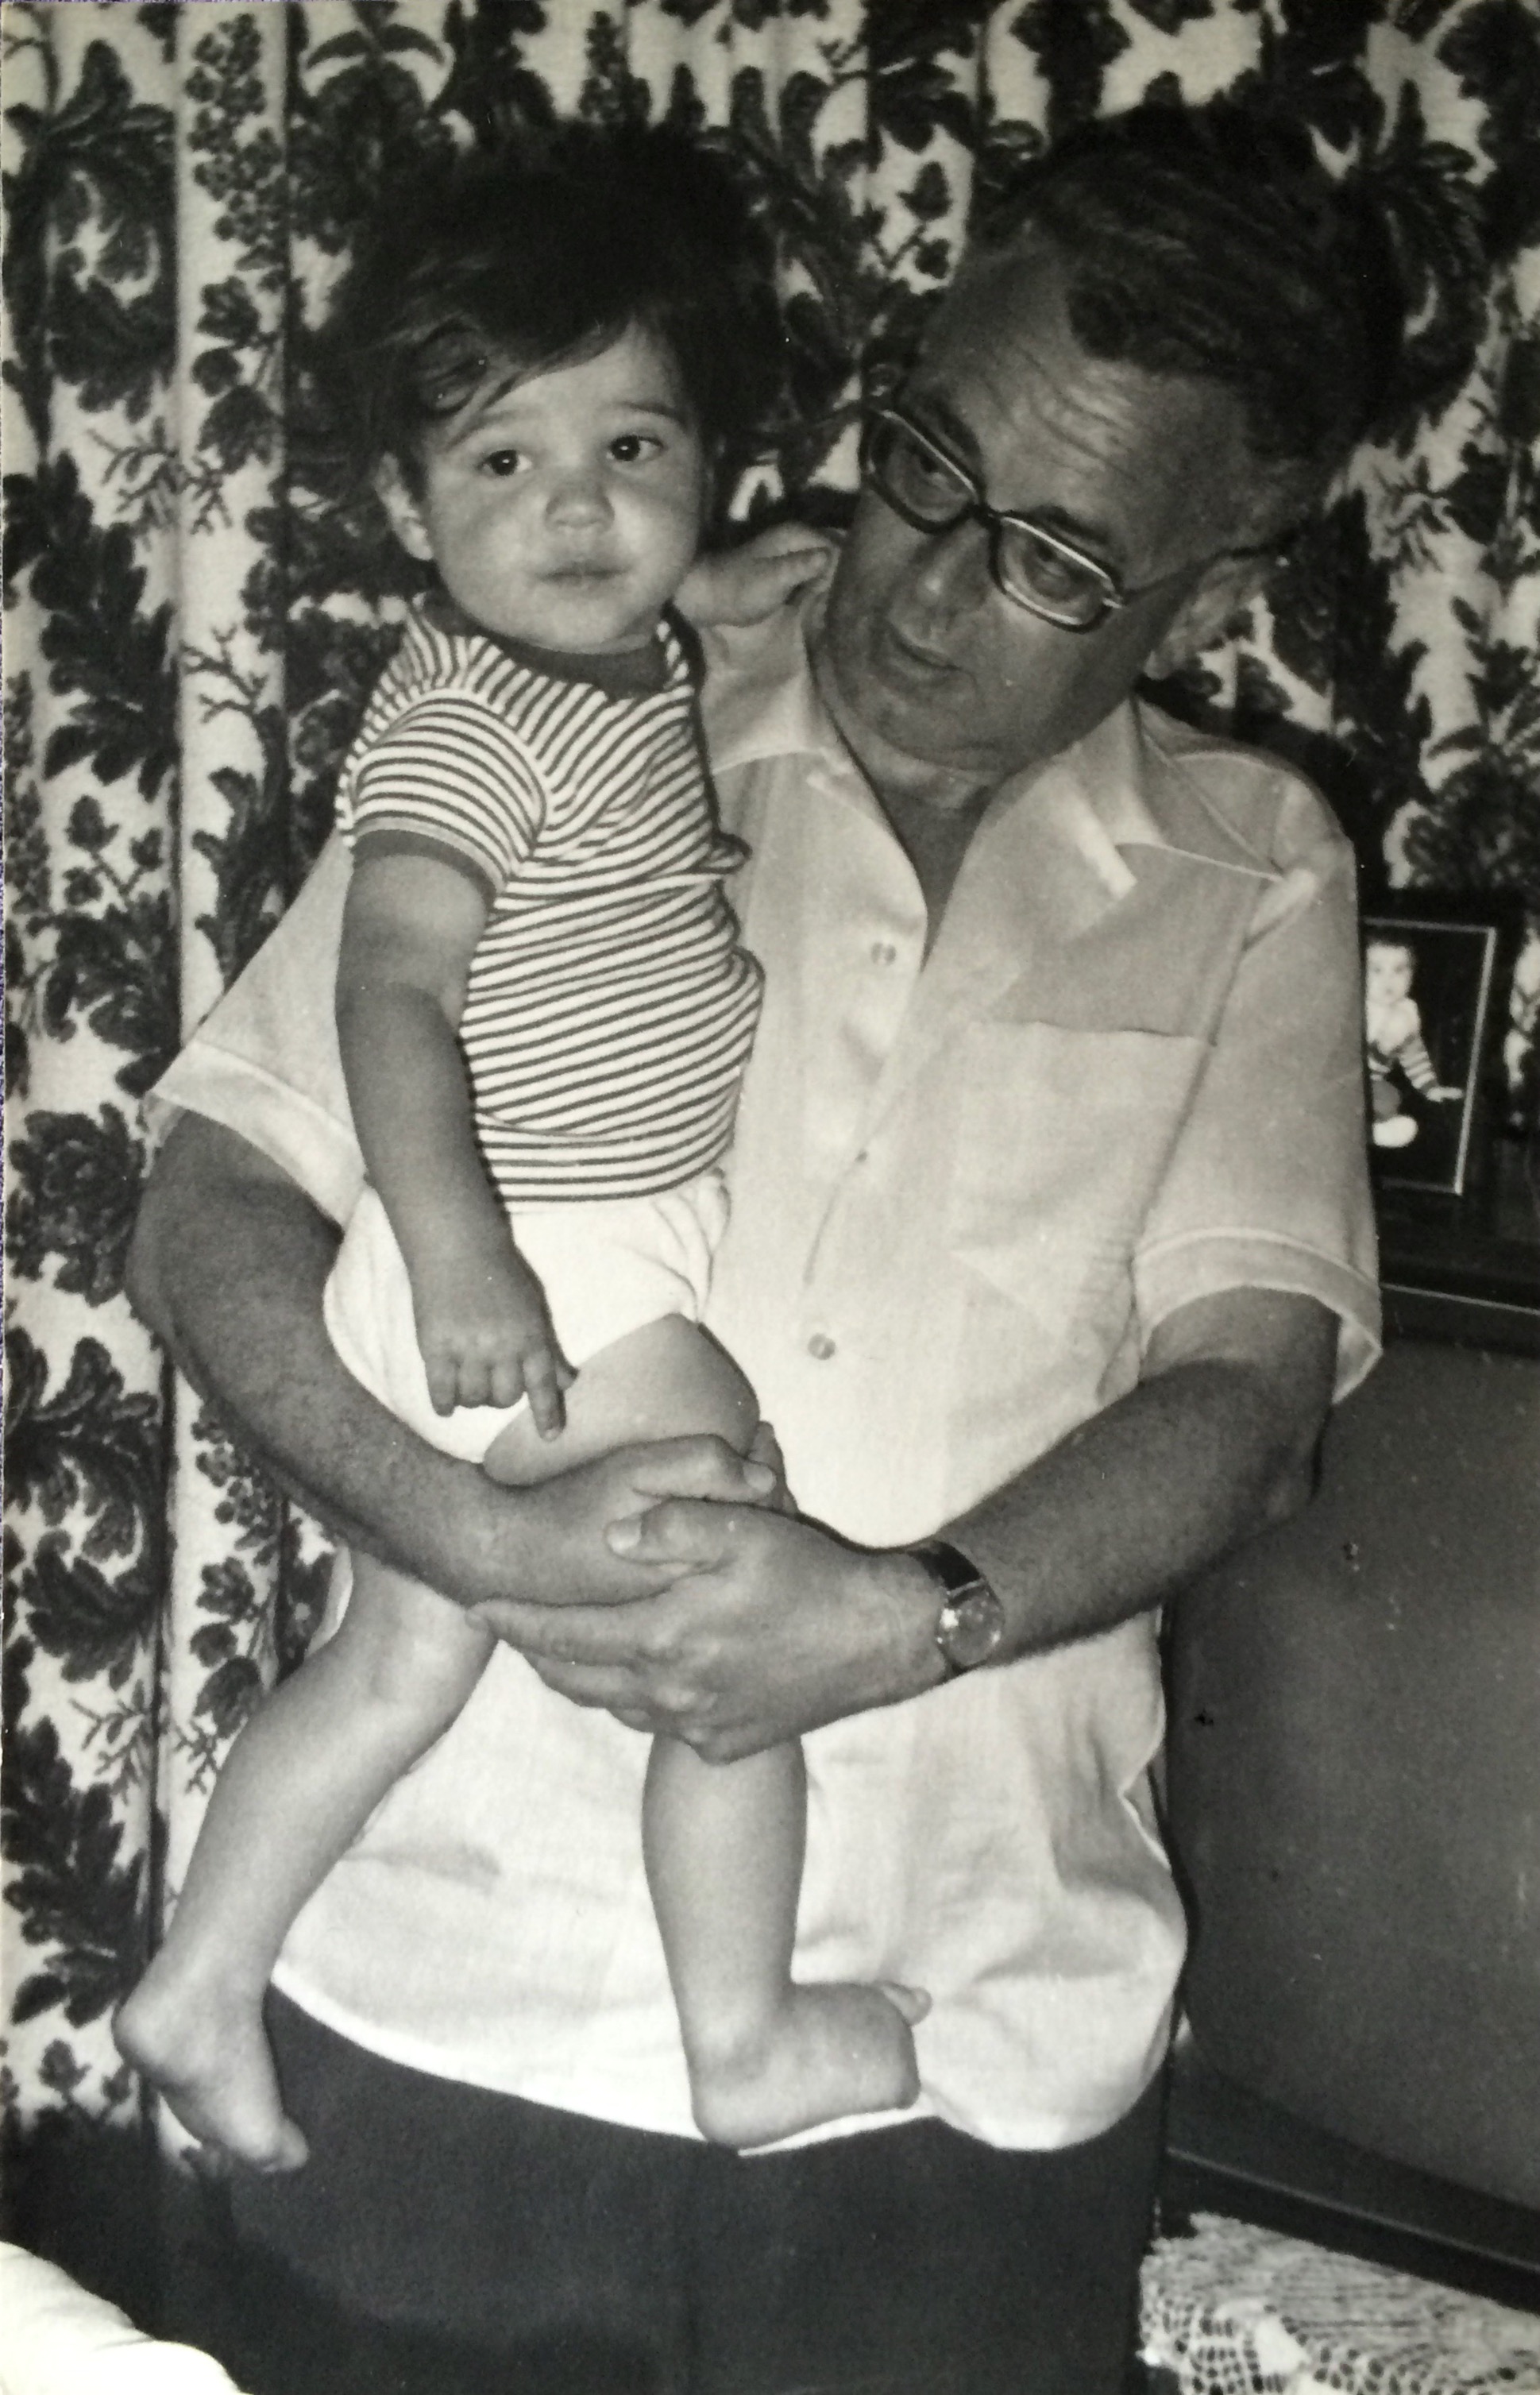 Foto van opa en een kleine Erik. Ergens rond 1973/1974 schat ik.
Picture of grandpa and a little Erik. Est. Somewhere in 1973/1974.